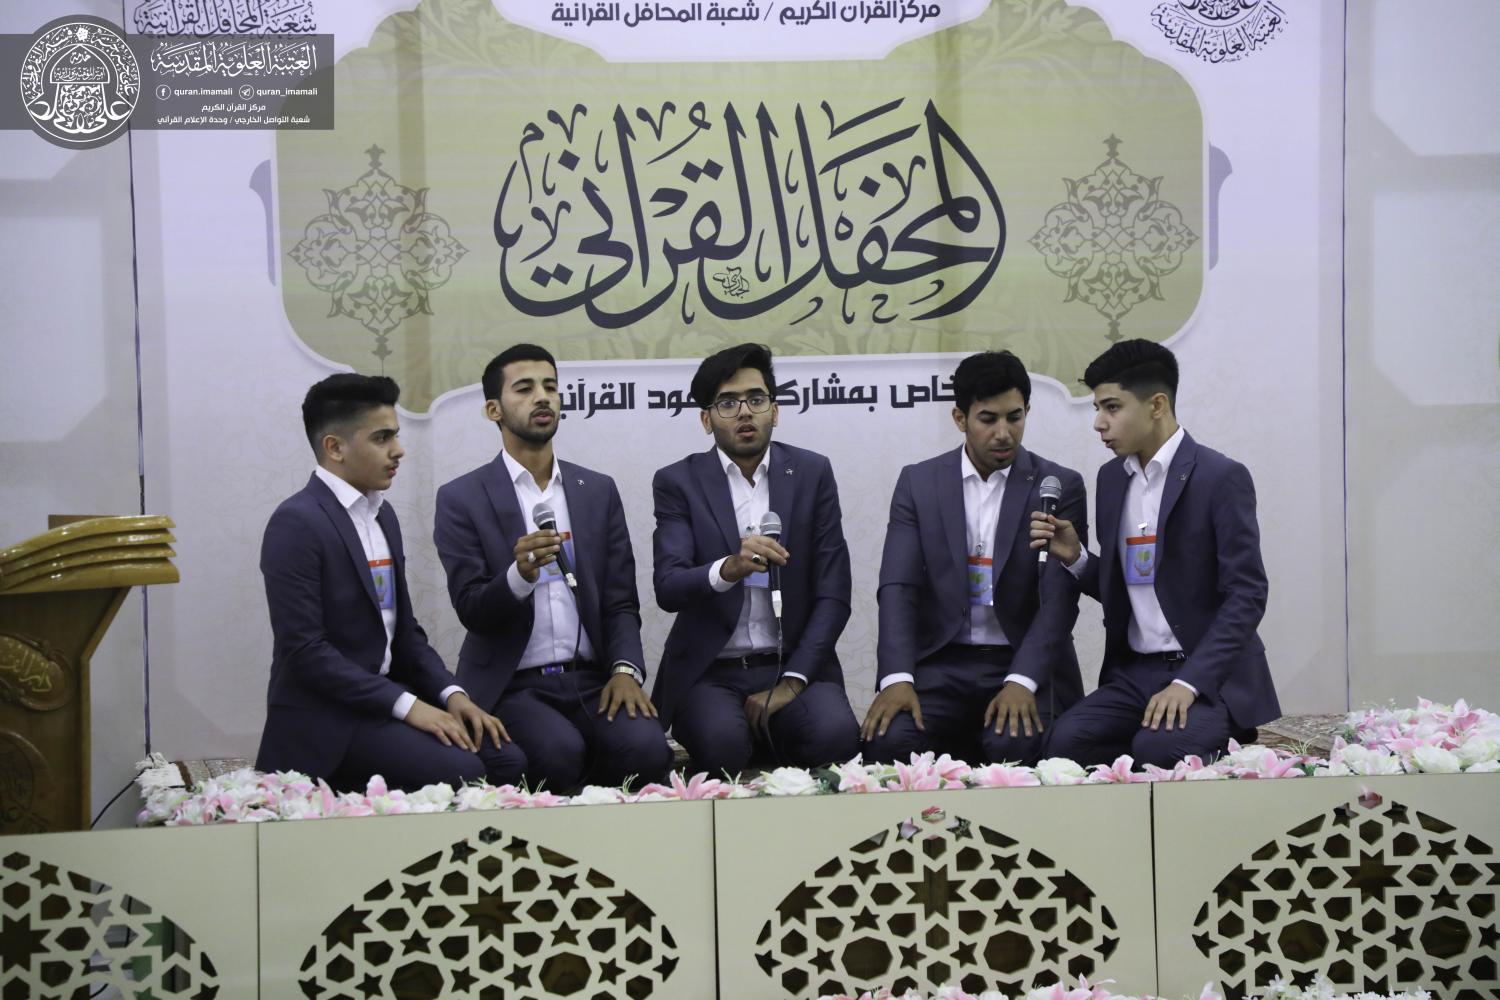 المحفل القرآني باستضافة وفد جمعية المنتظر القرآنية من البصرة | 2019